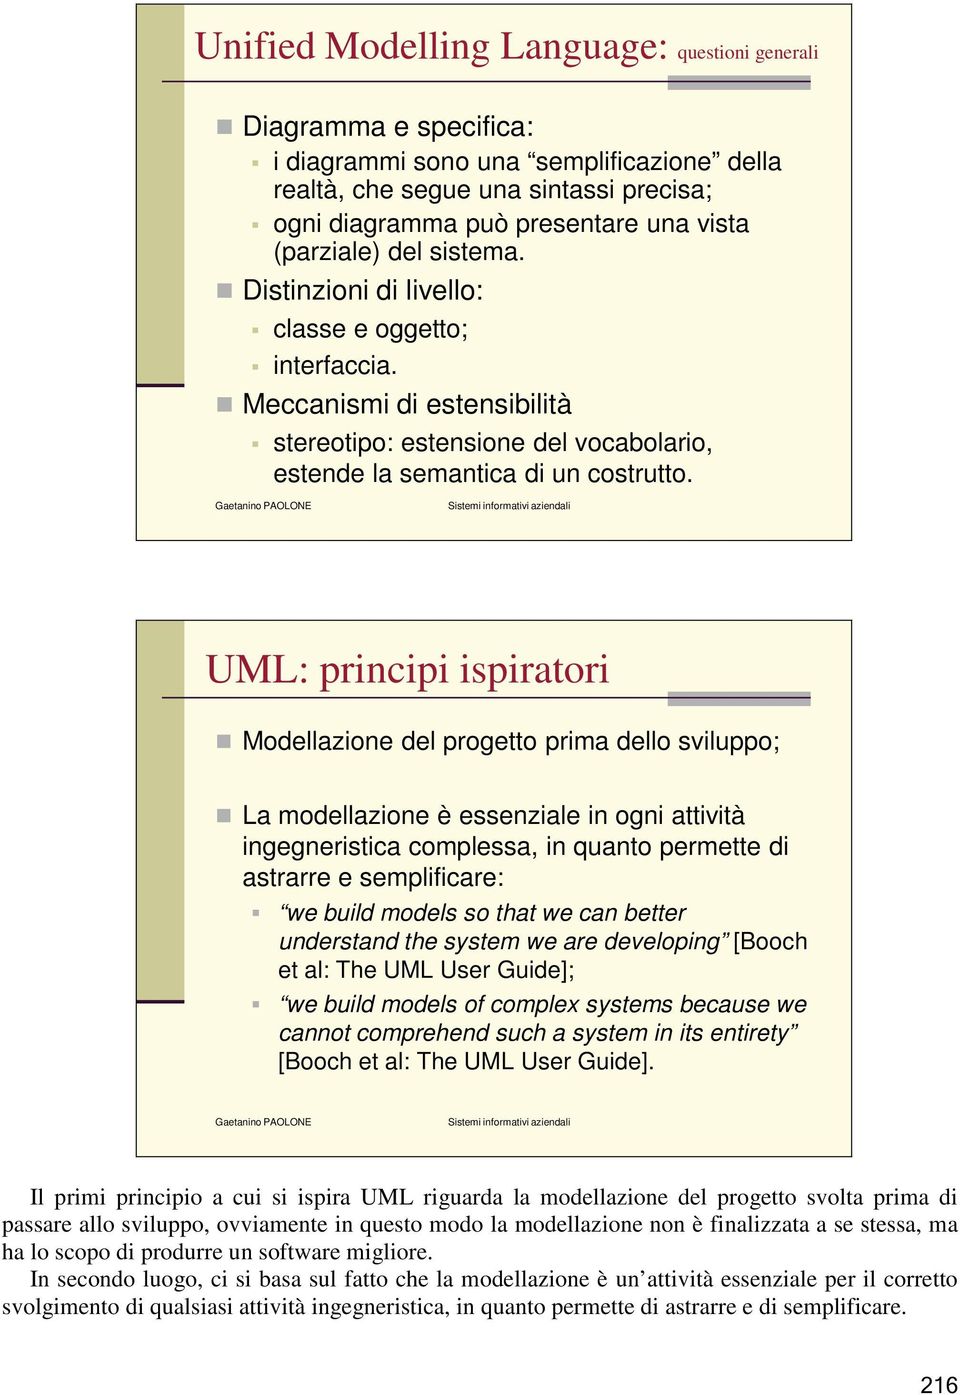 UML: principi ispiratori Modellazione del progetto prima dello sviluppo; La modellazione è essenziale in ogni attività ingegneristica complessa, in quanto permette di astrarre e semplificare: we